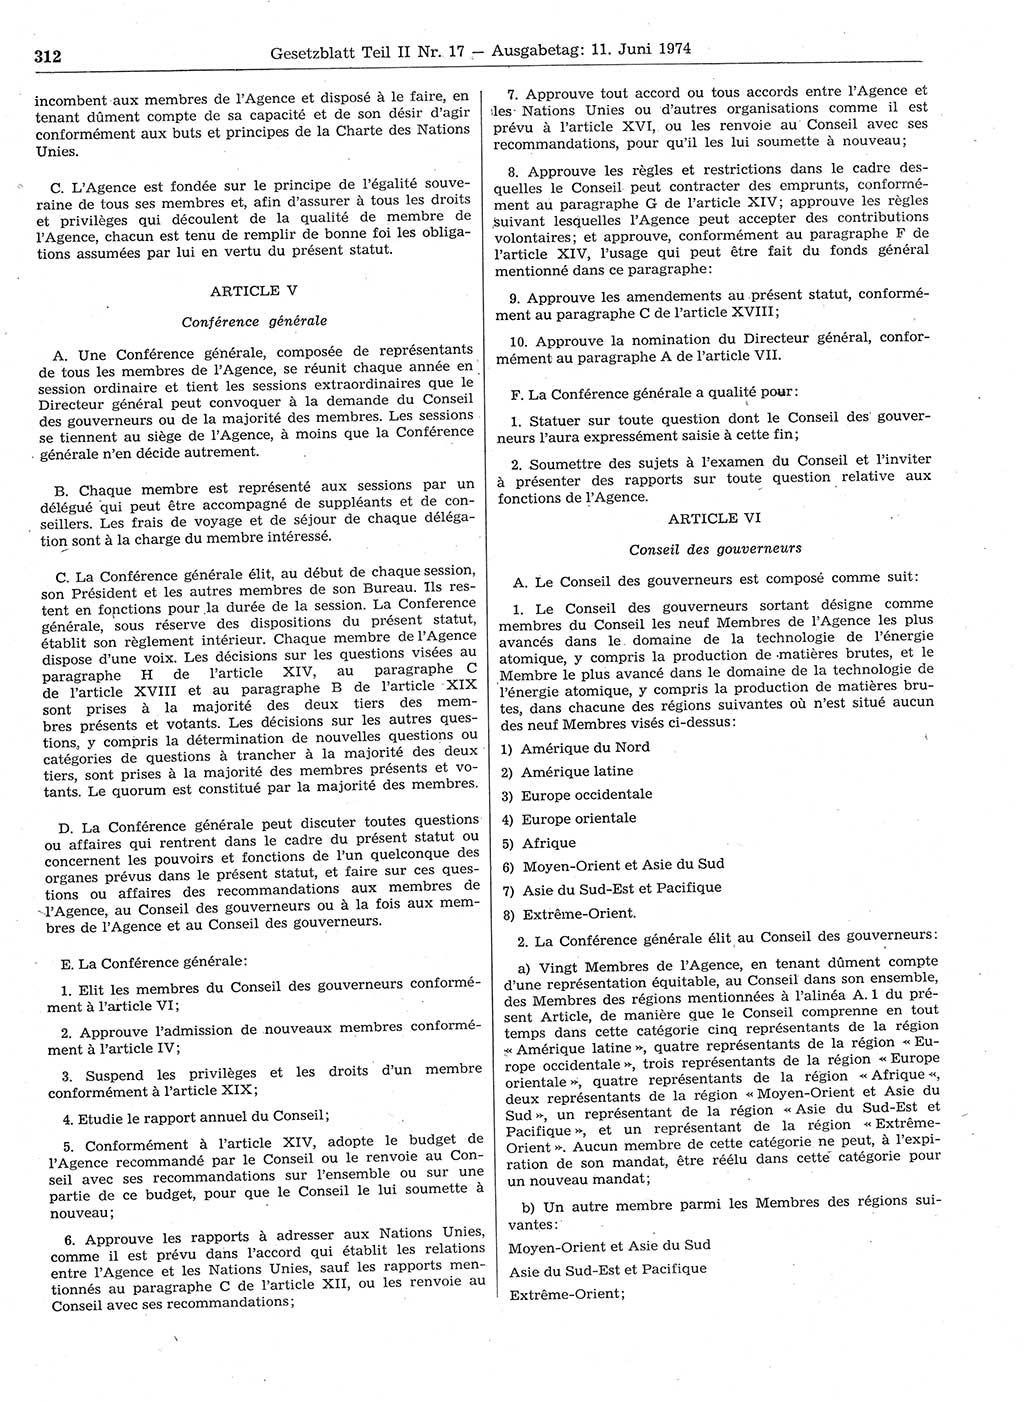 Gesetzblatt (GBl.) der Deutschen Demokratischen Republik (DDR) Teil ⅠⅠ 1974, Seite 312 (GBl. DDR ⅠⅠ 1974, S. 312)